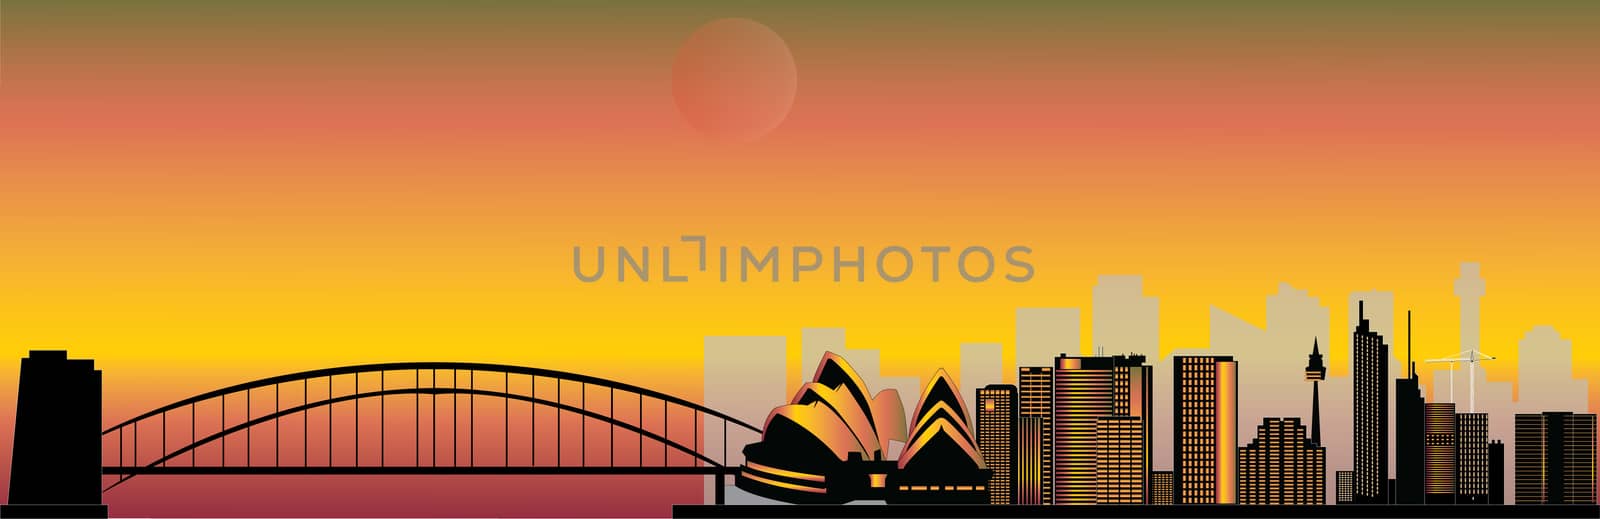 sydney skyline by compuinfoto